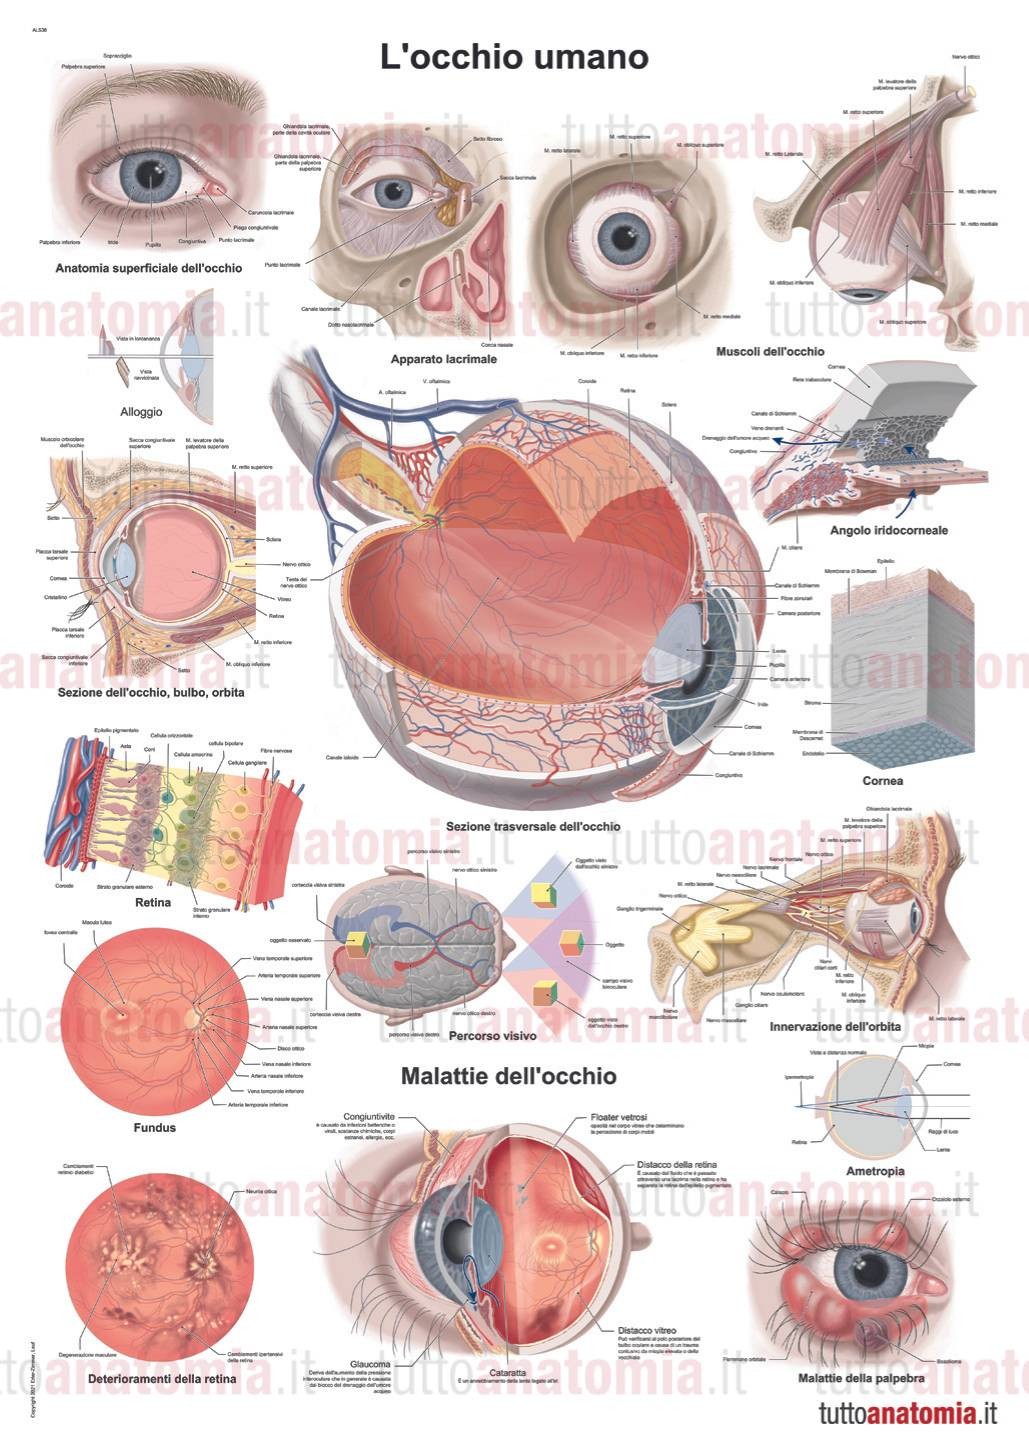 Poster anatomia umana L occhio umano